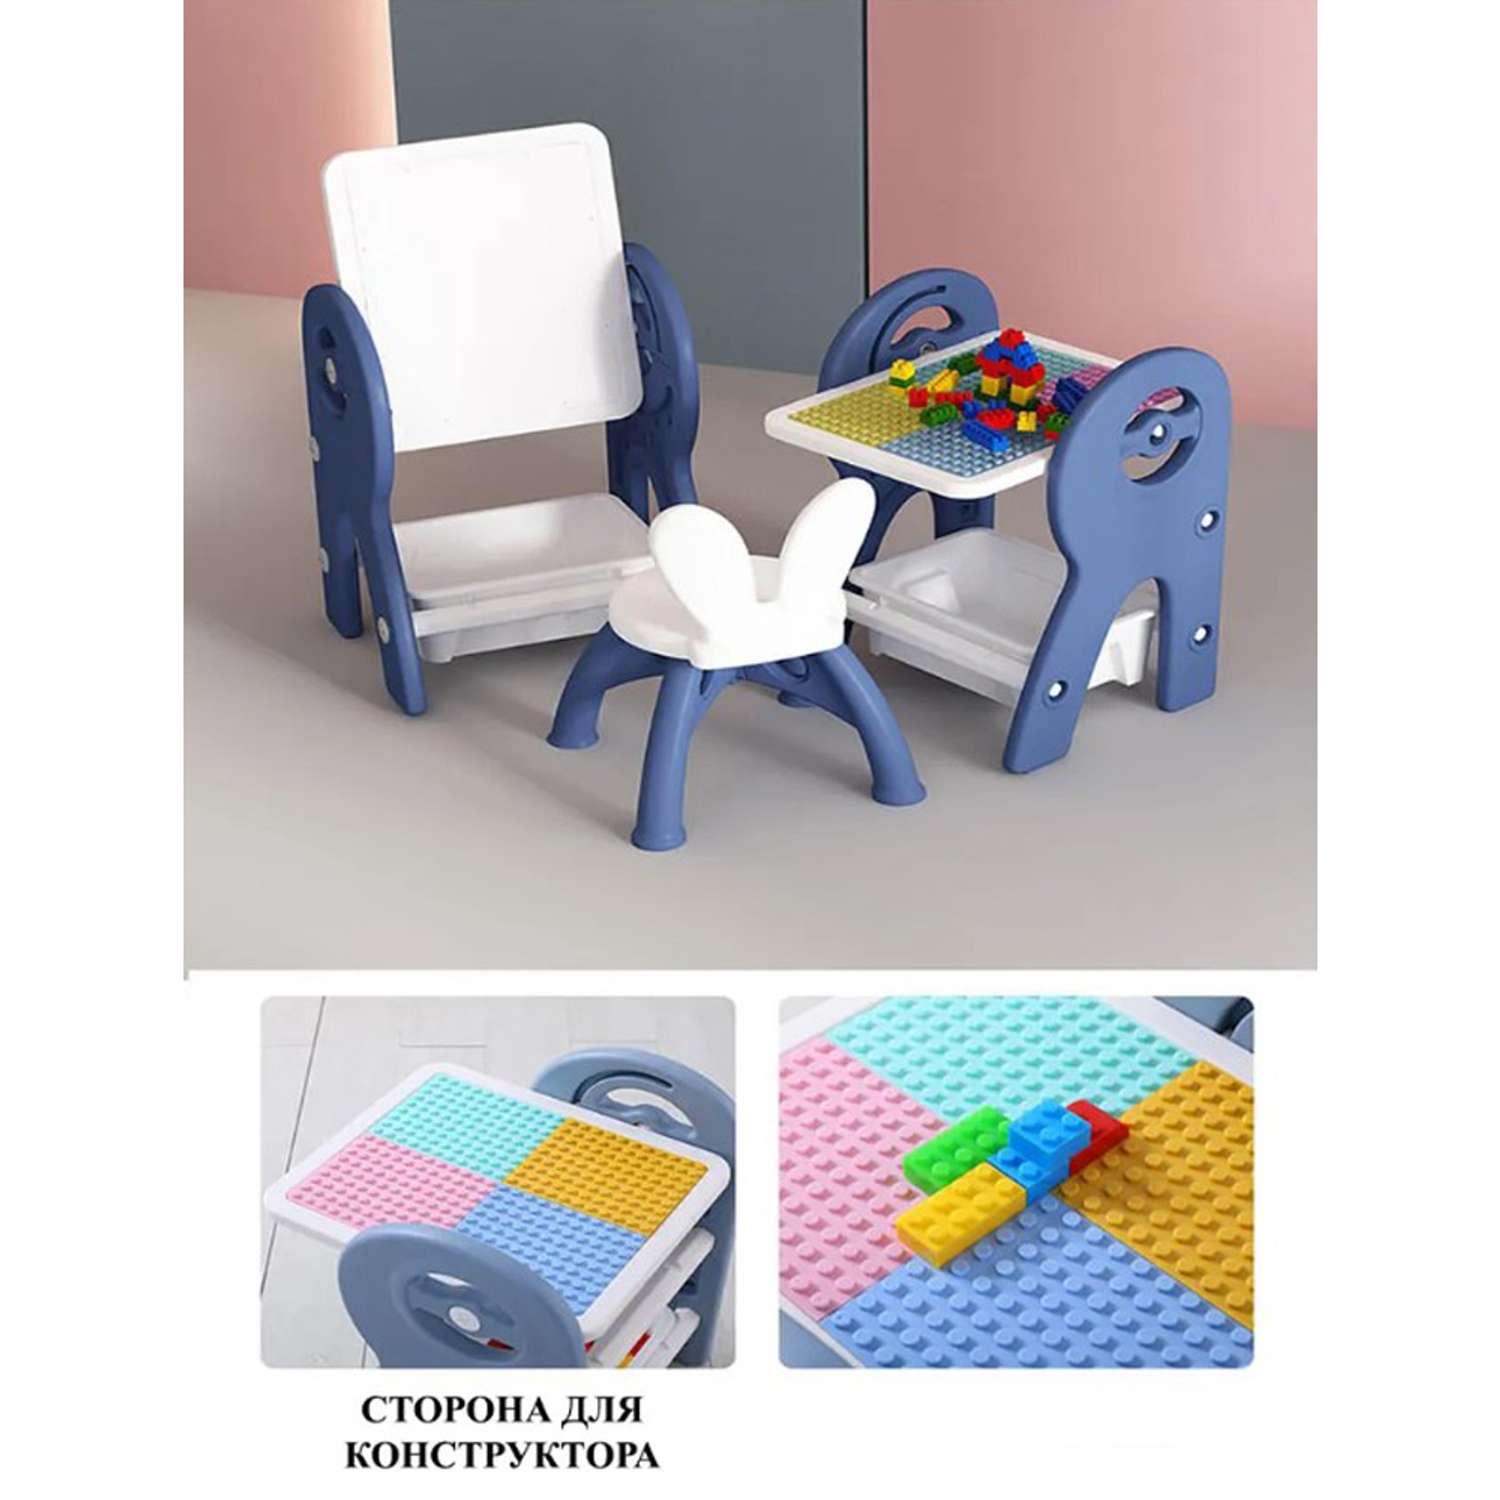 Набор для творчества Floopsi мольберт столик конструктор стульчик. Доска для рисования и конструирования Розовый - фото 11